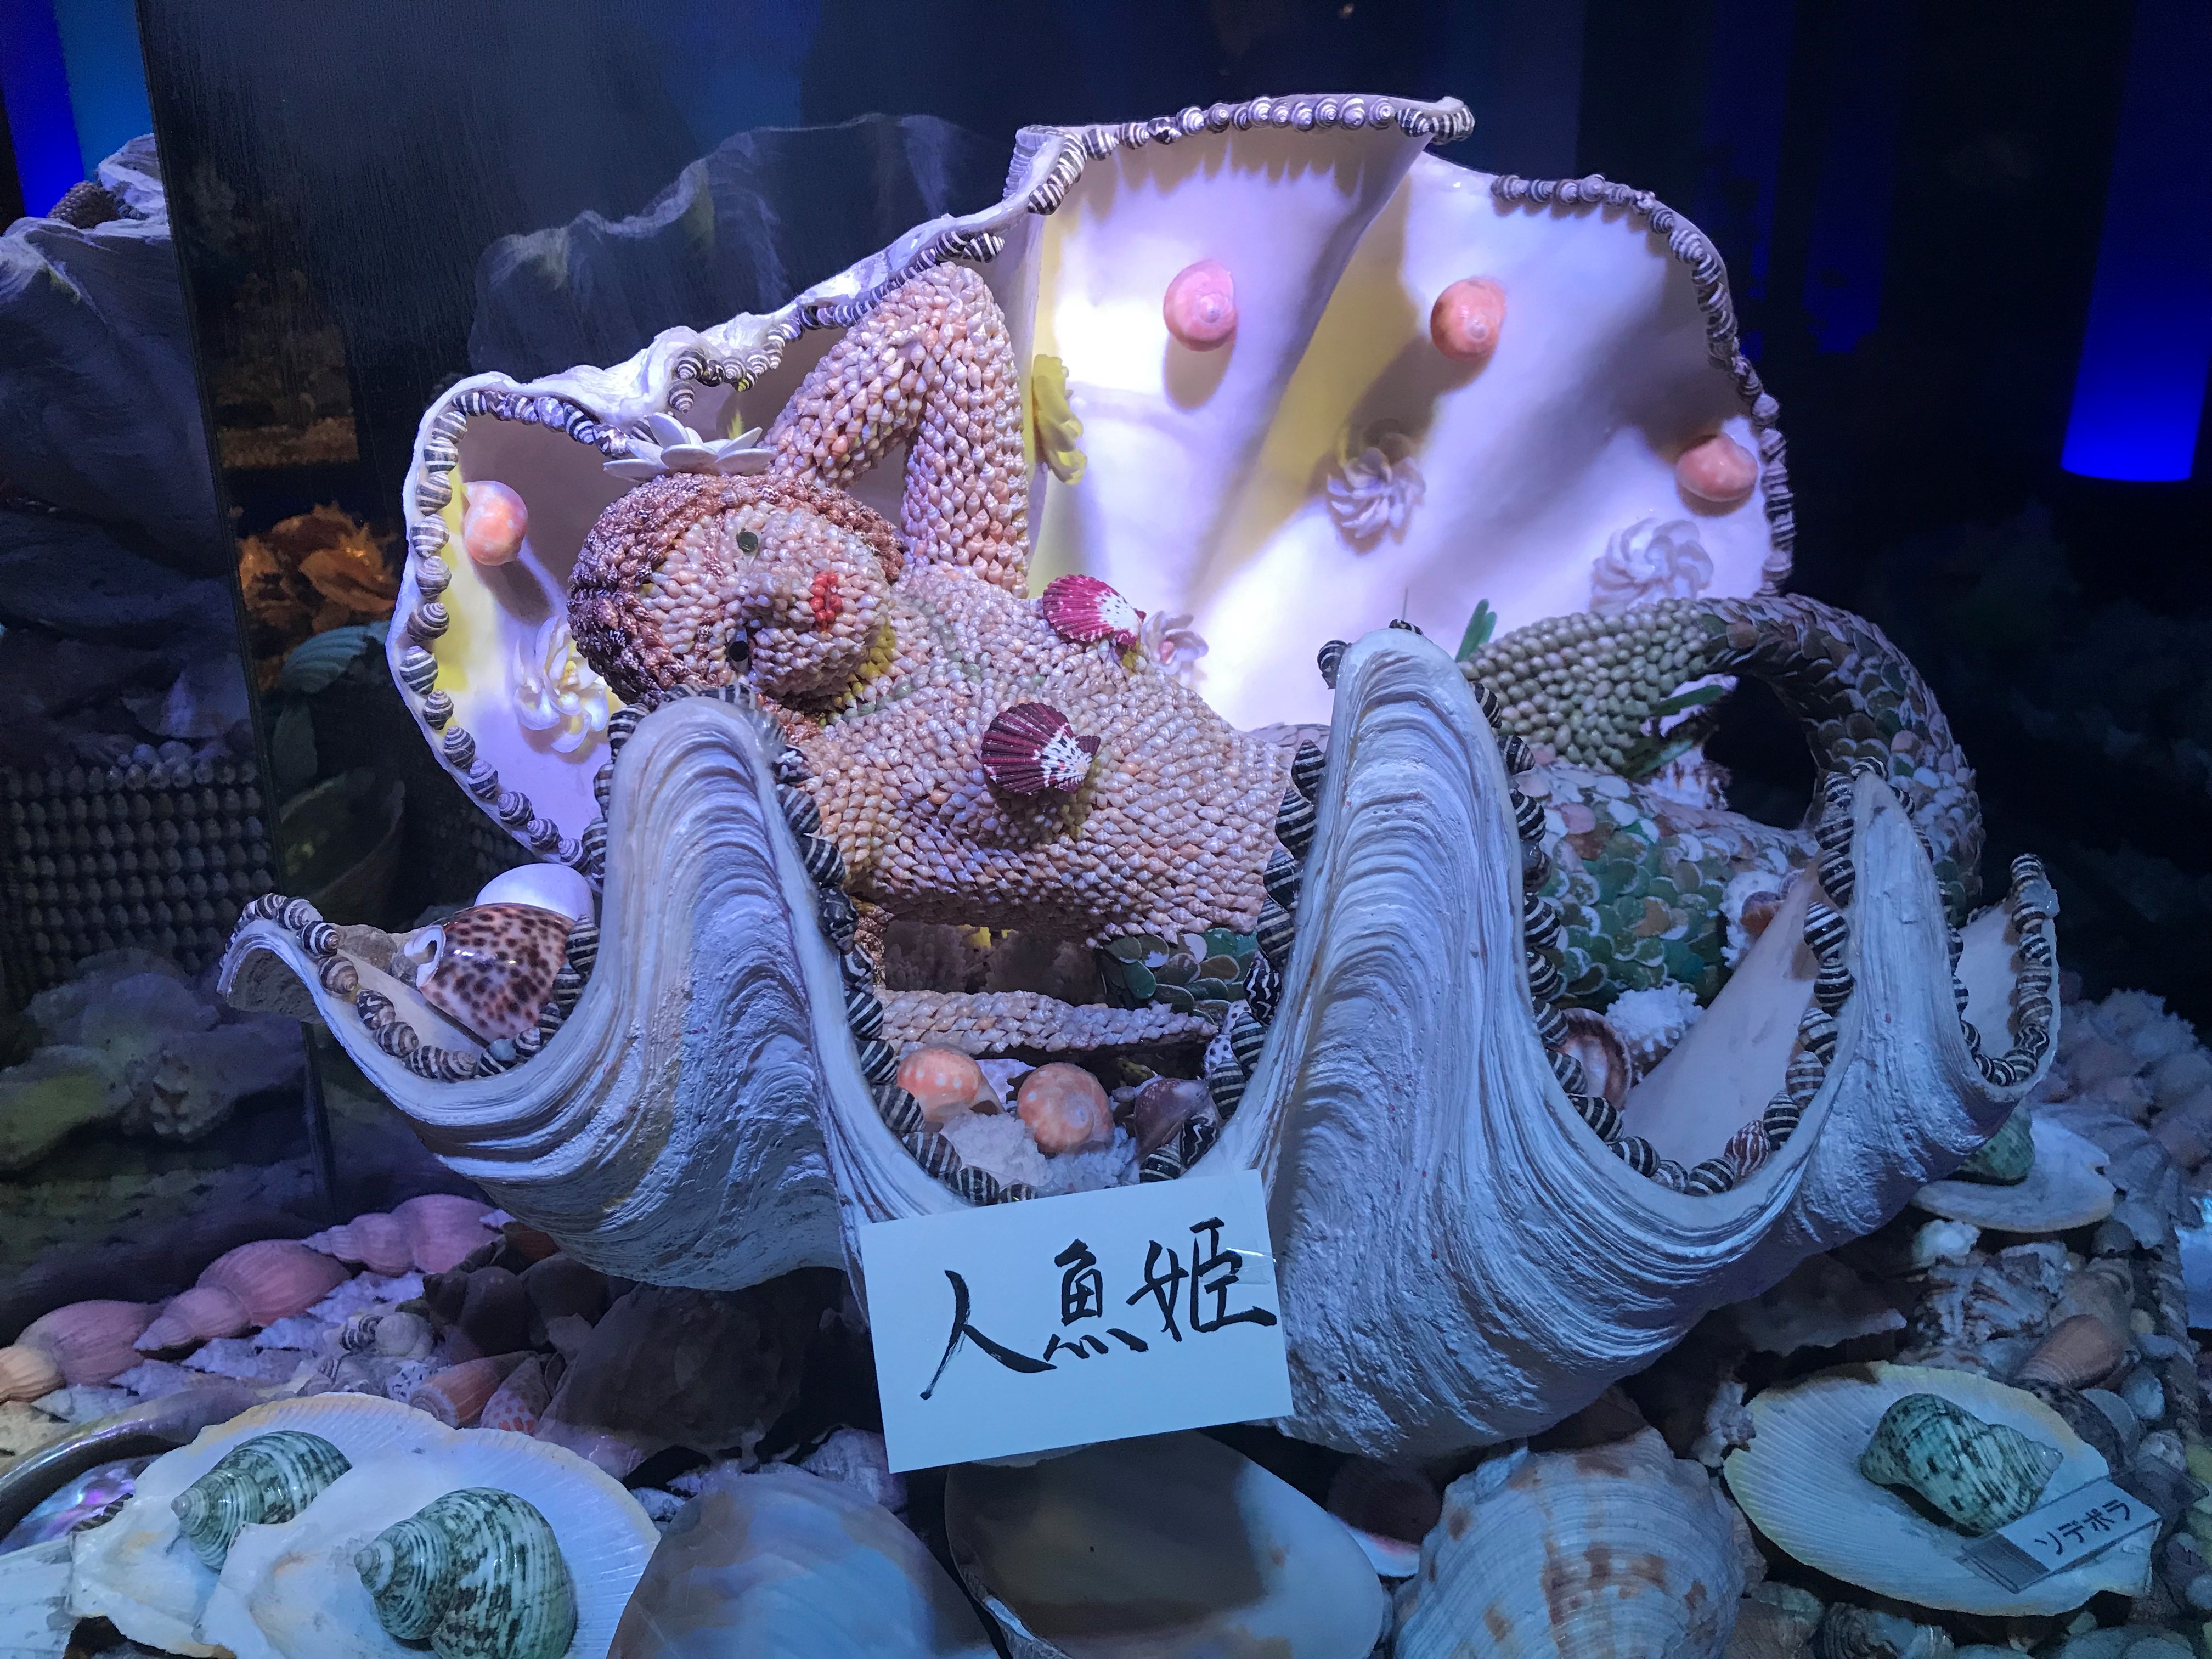 竹島ファンタジー館の館内の人魚姫